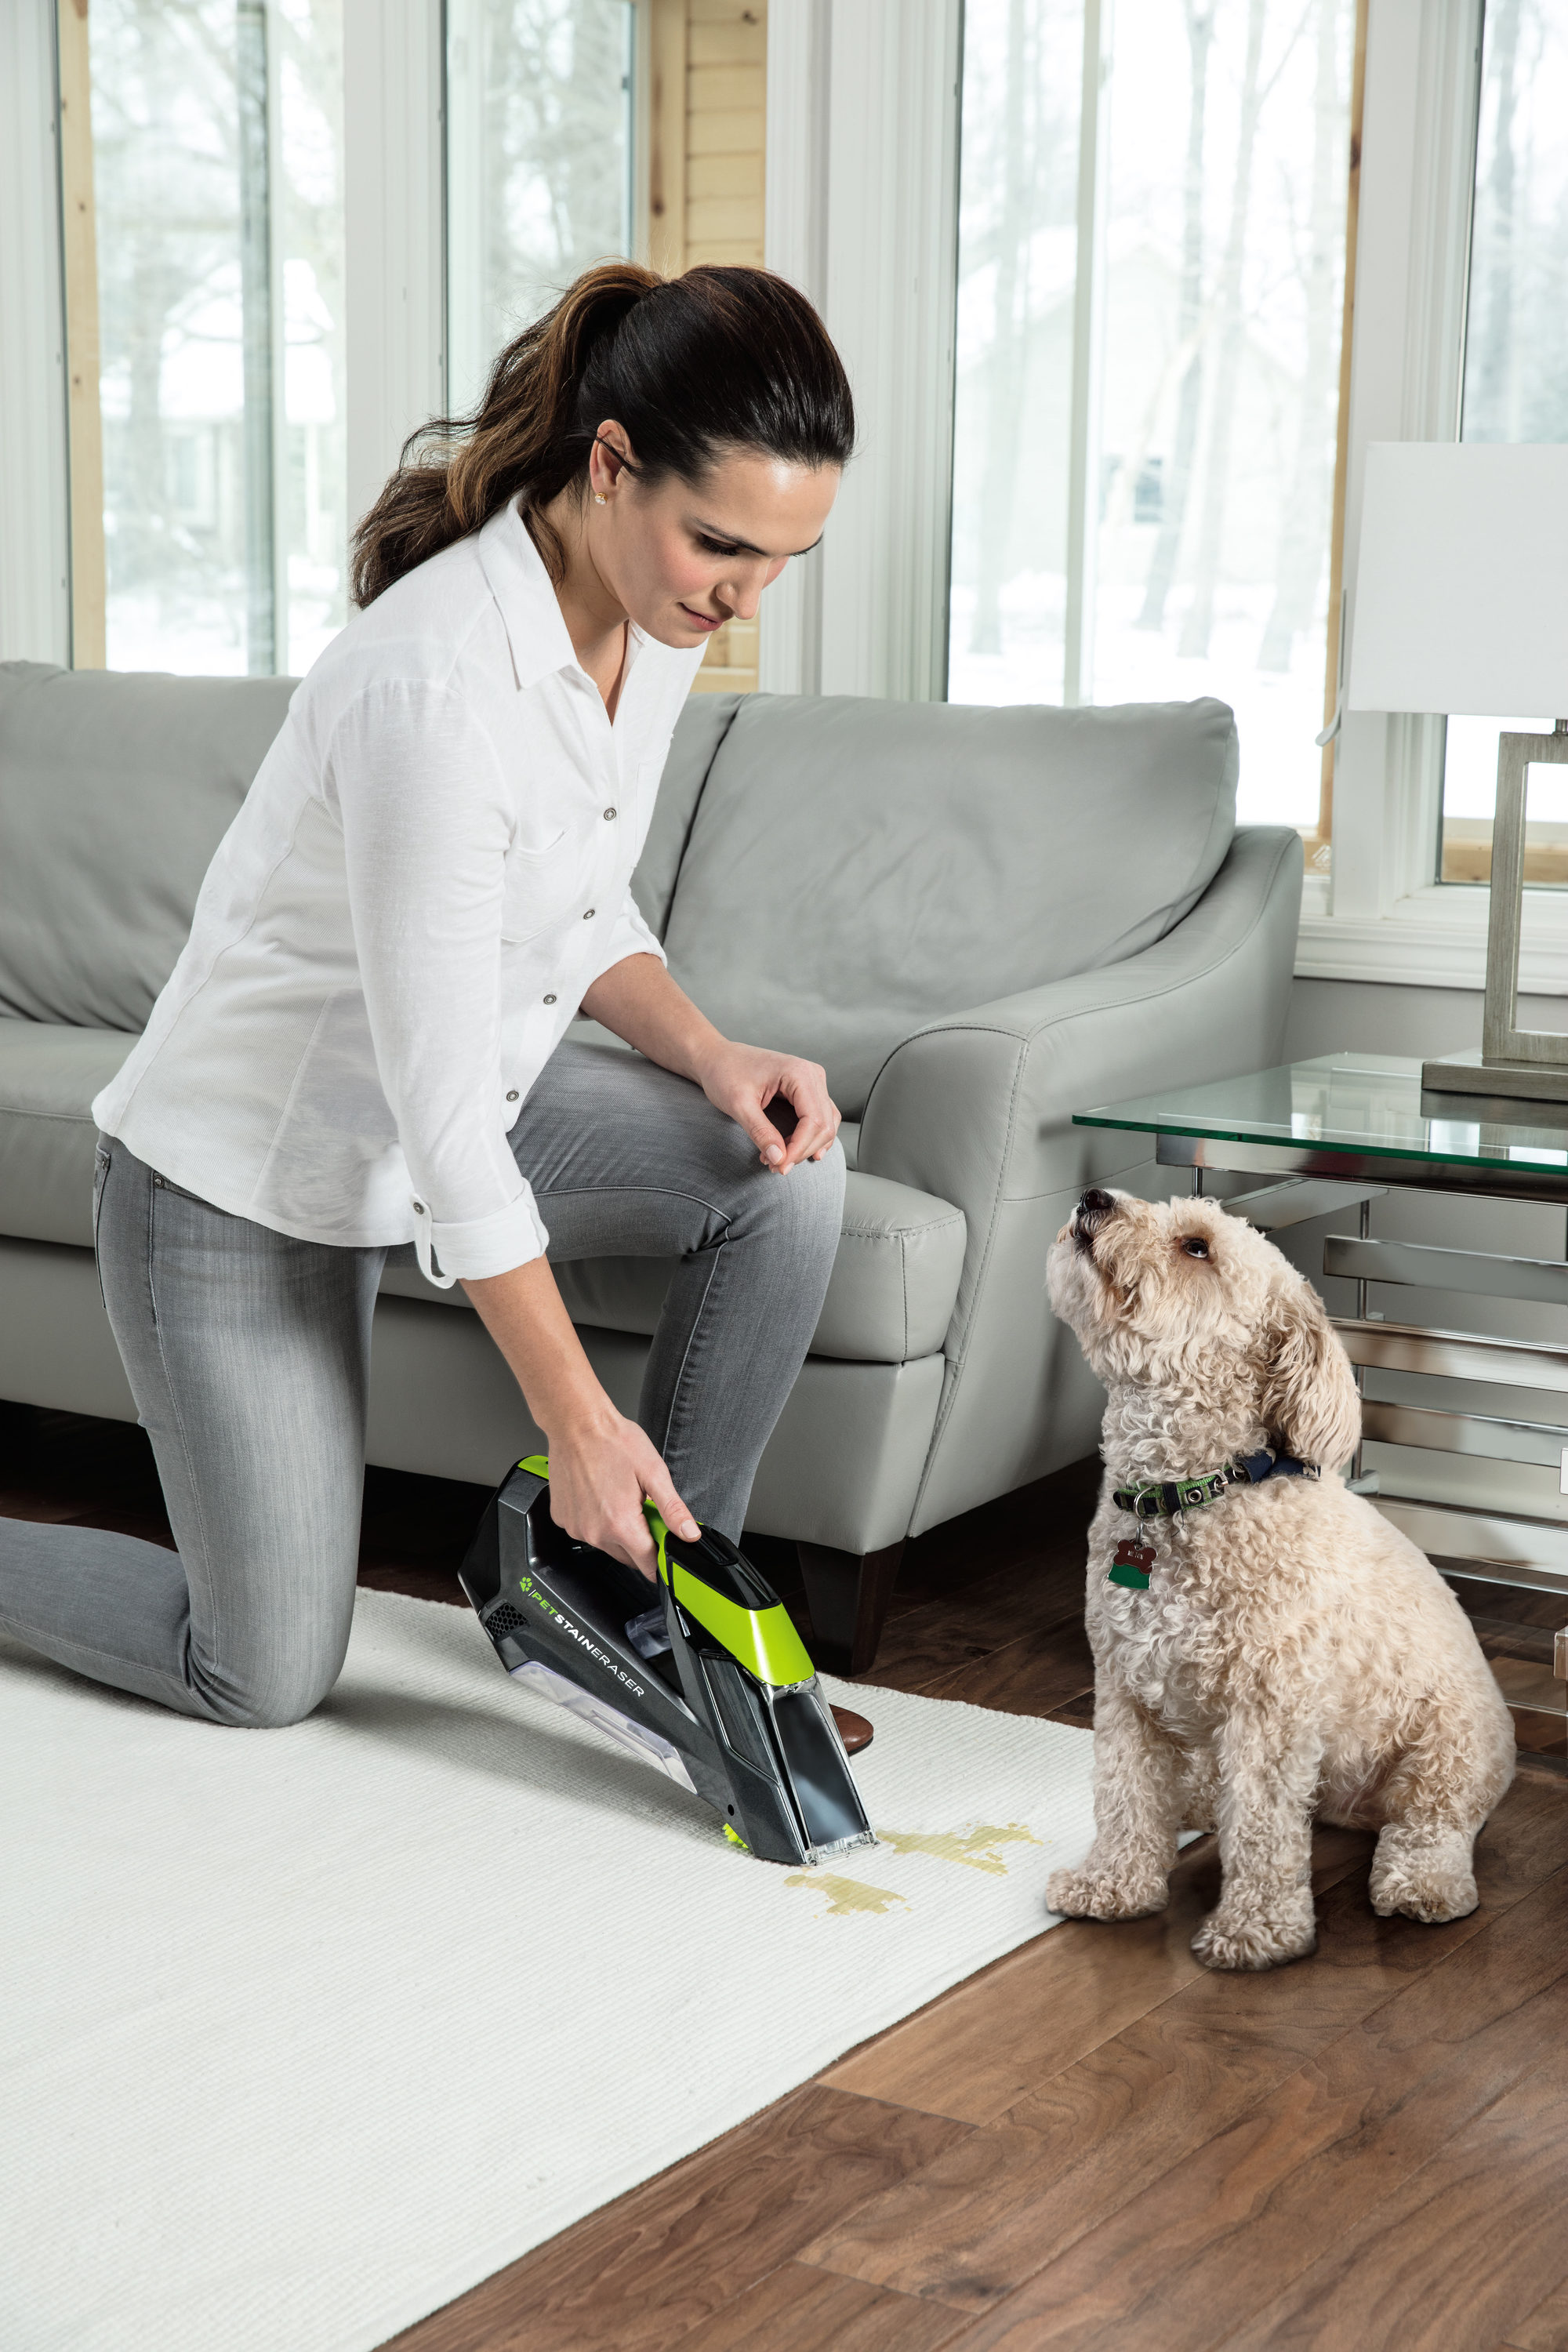 Bissell vs Black & Decker Cordless Carpet Spot Cleaner Pet Stain Eraser  Powerbrush vs Spillbuster 